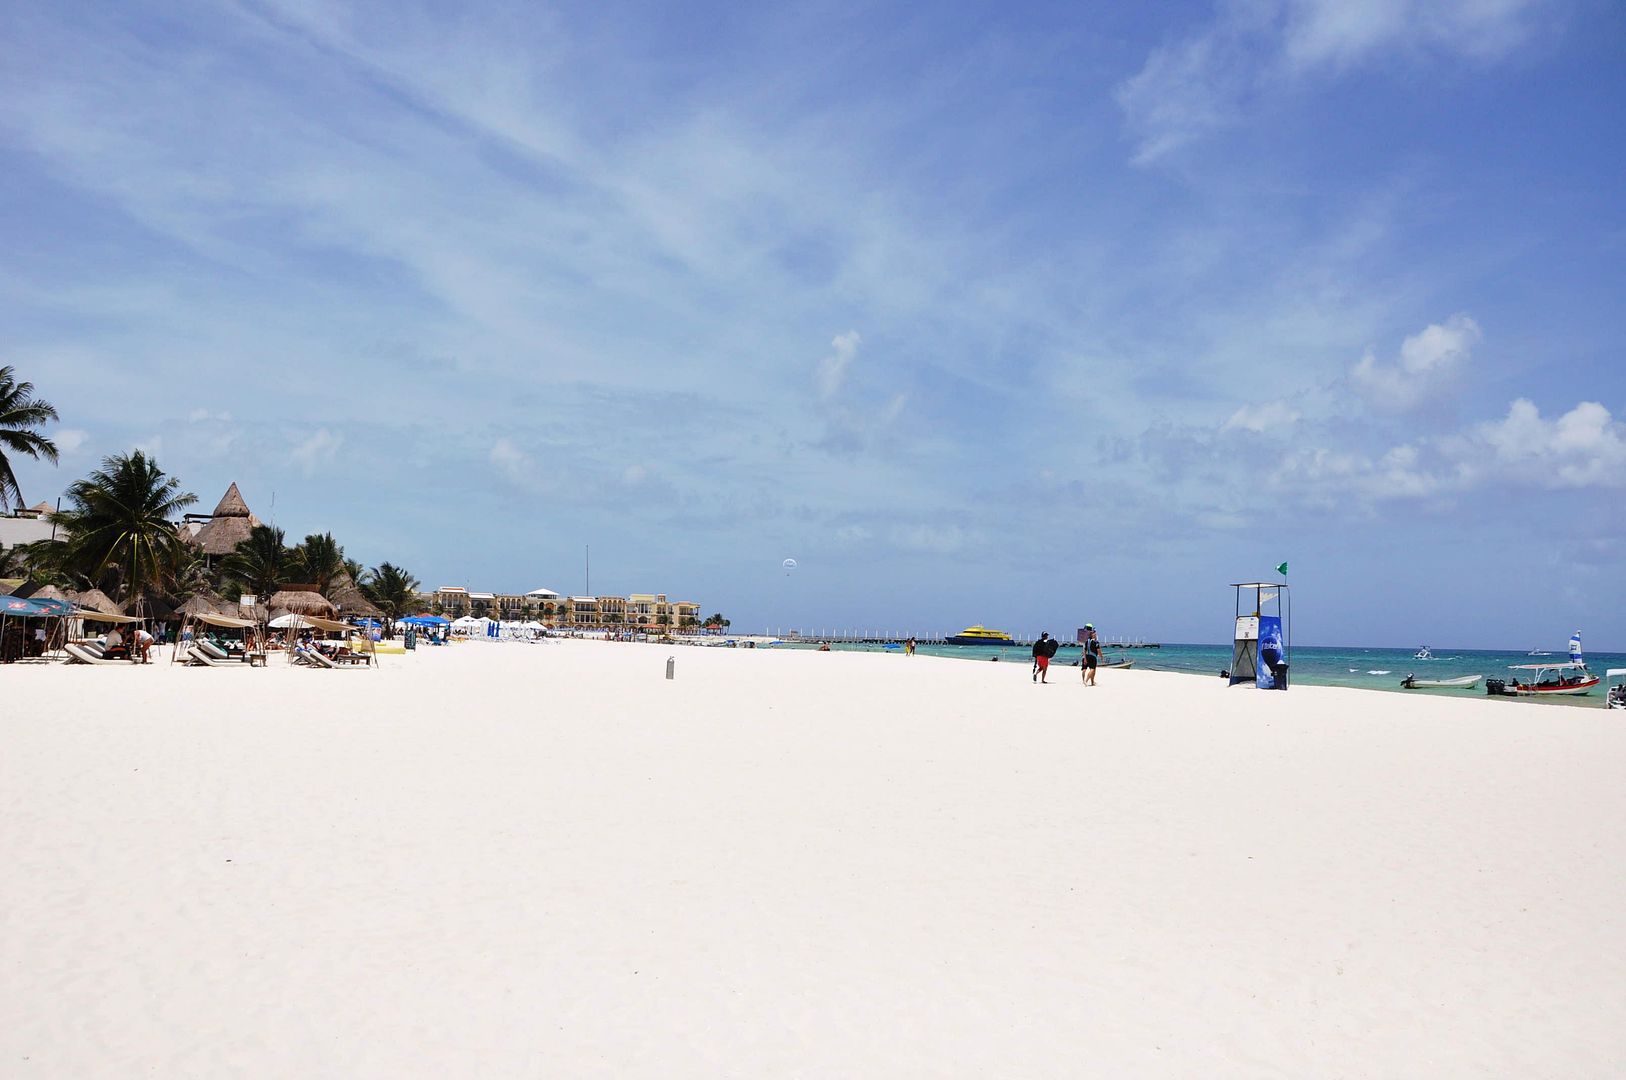 Playa del Carmen Beaches